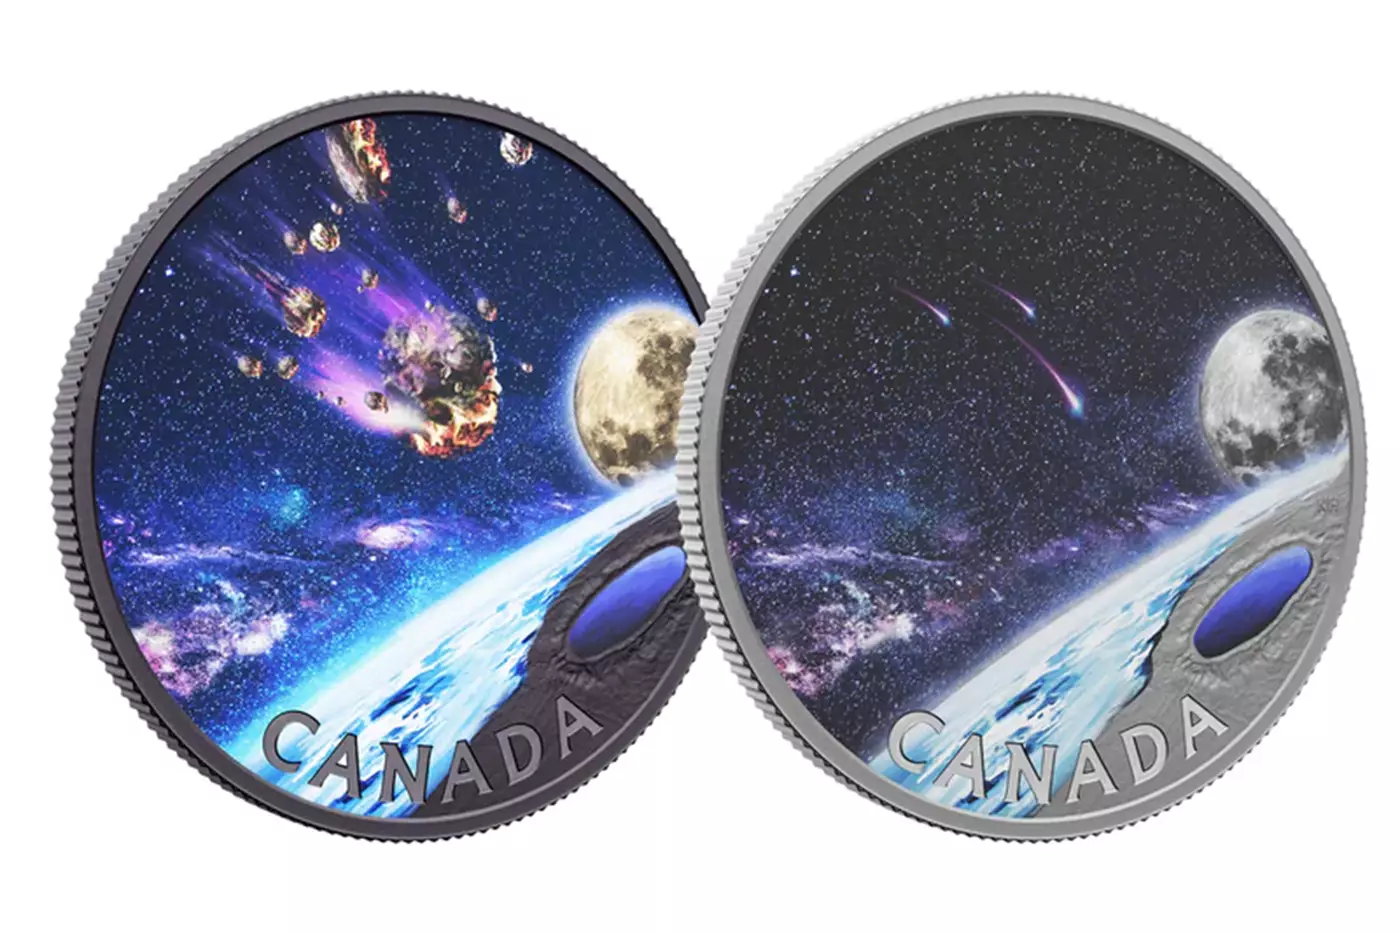 ضرابخانه سلطنتی کانادا یک سکه کلکسیونی ۵۰ دلاری ضرب کرده که از نقره خالص ساخته شده.